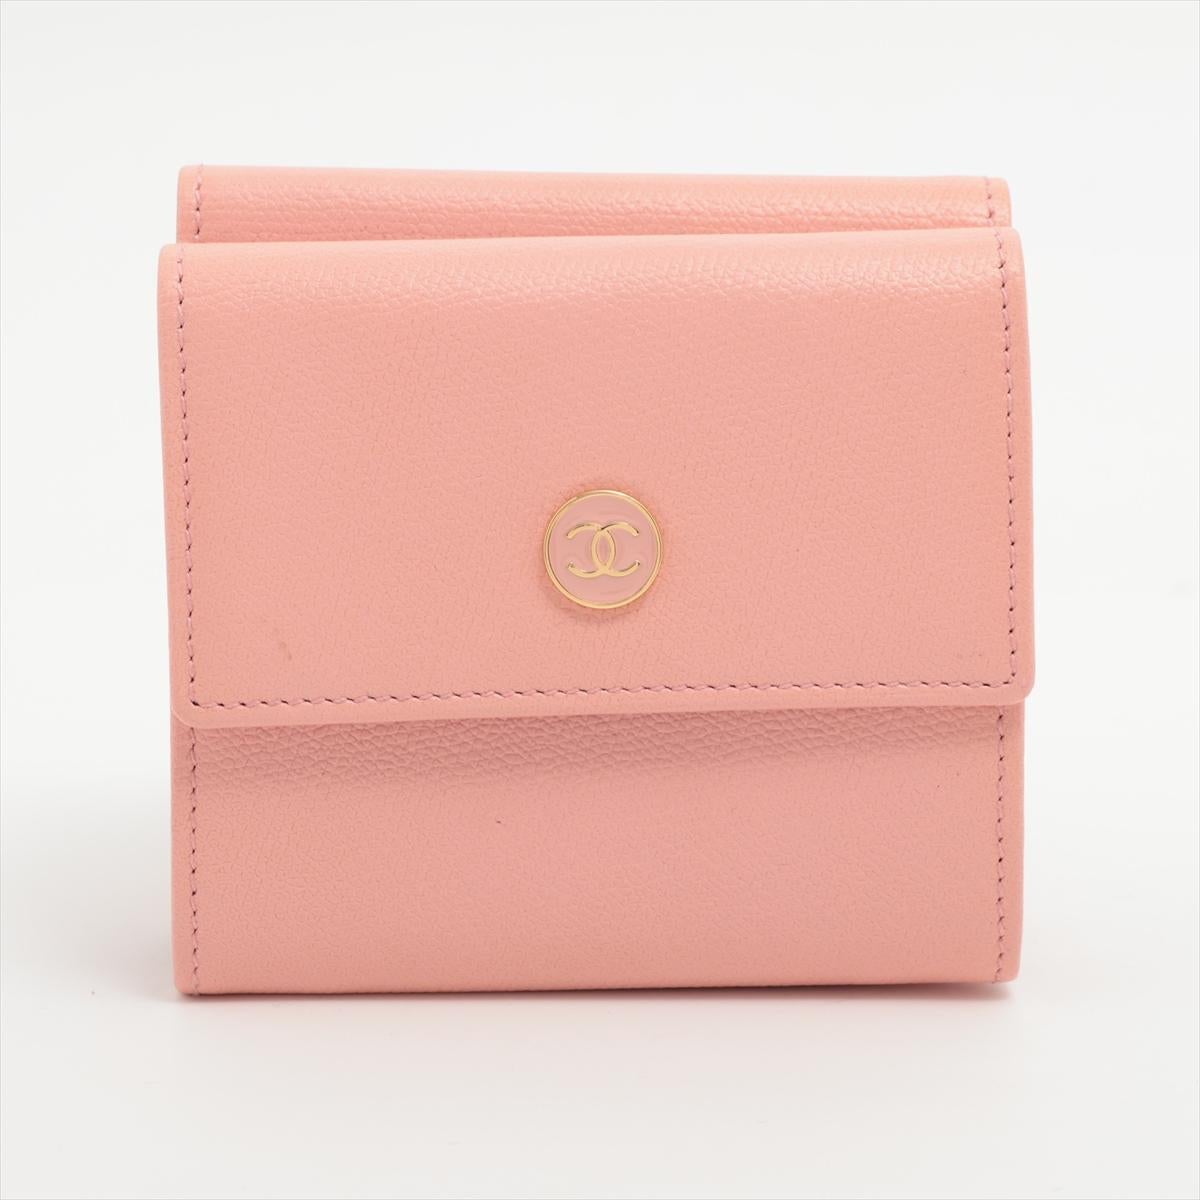 Die Chanel CC Logo Button Compact Wallet in Pink ist ein charmantes und elegantes Accessoire, das kultiges Design mit einem verspielten Touch verbindet. Das kompakte Portemonnaie, das mit Präzision und Liebe zum Detail gefertigt wurde, ist in einem